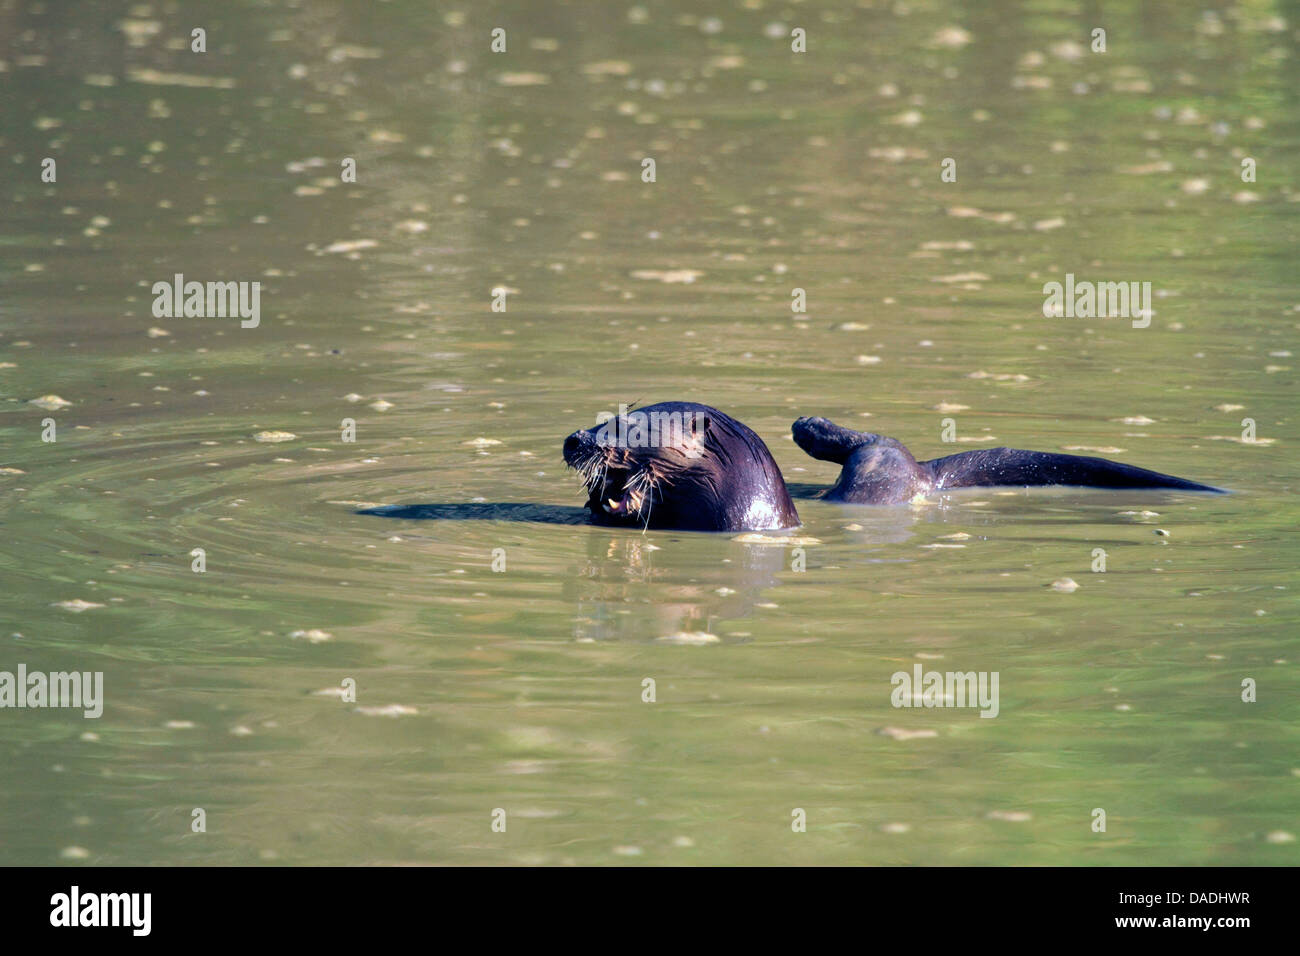 Neotropical otter, Neotropical Lontra di fiume (Lontra longicaudis), alimentando il pesce in un pool fangoso, Brasile, Matto groso, Pantanal Foto Stock